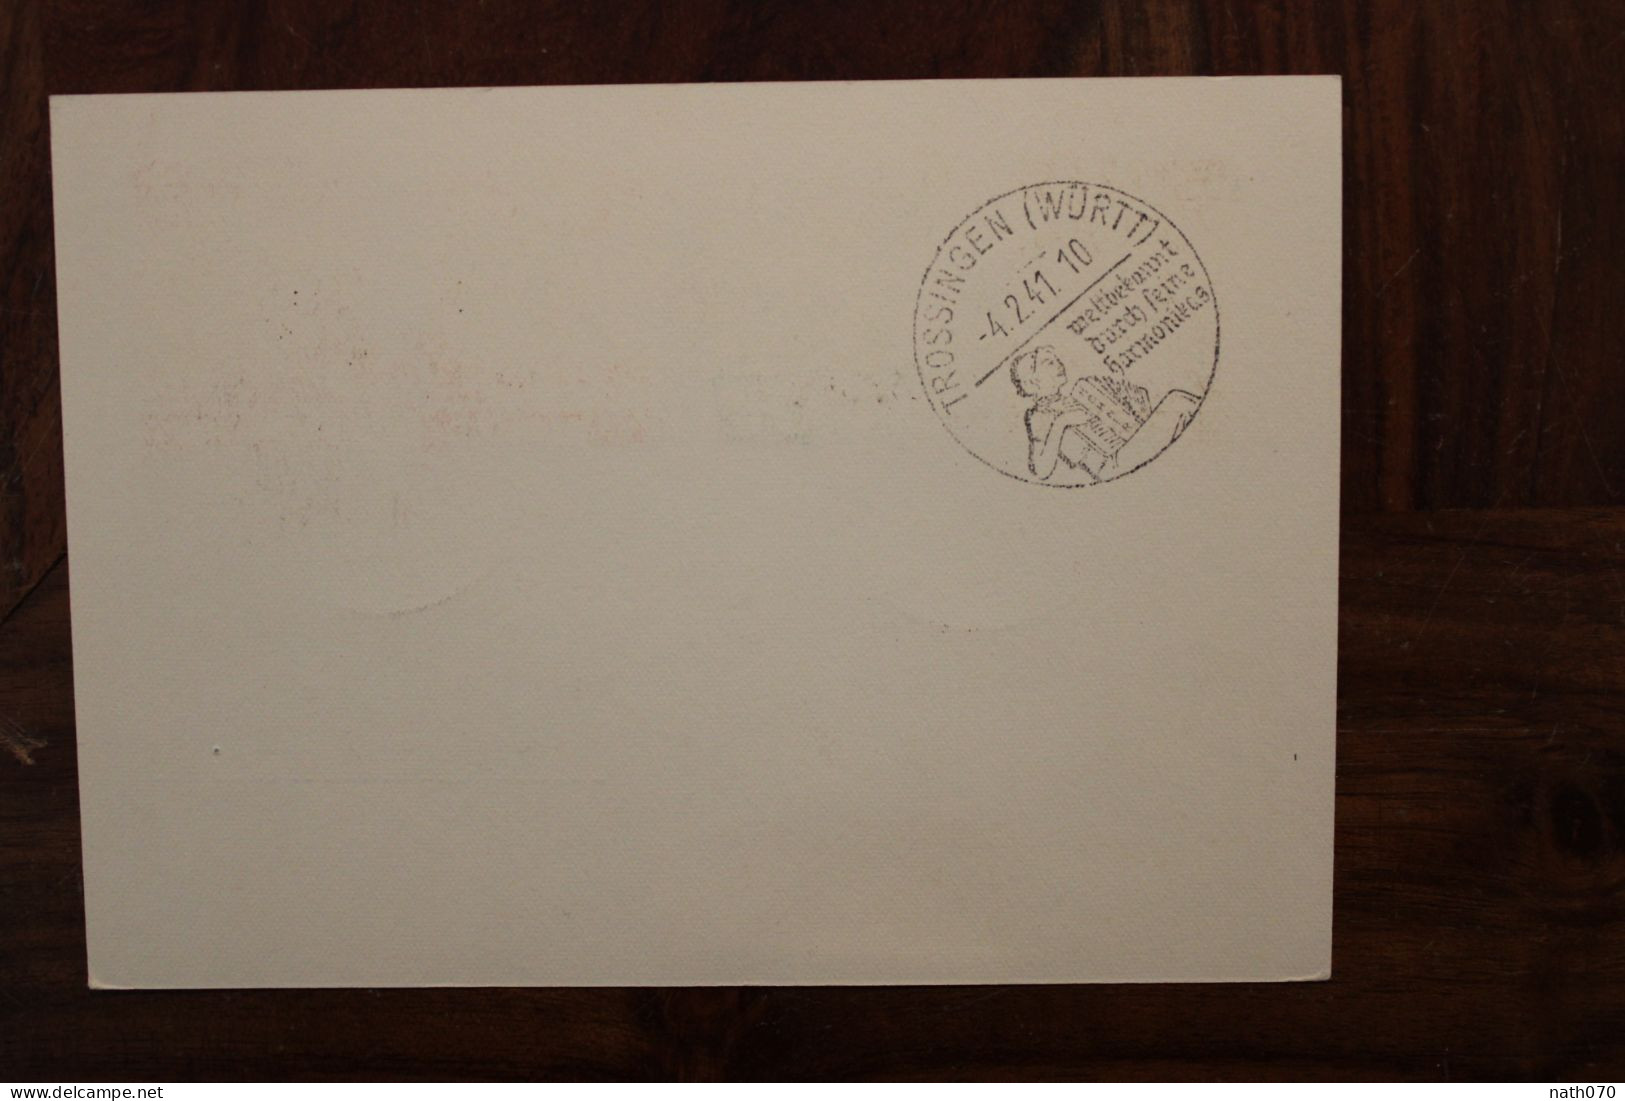 LUXEMBURG 1941 Tag Der Briefmarke U-boot Trossingen Einschreiben Cover Luxembourg Registered Recommandé Besetzung Reco R - 1940-1944 Deutsche Besatzung